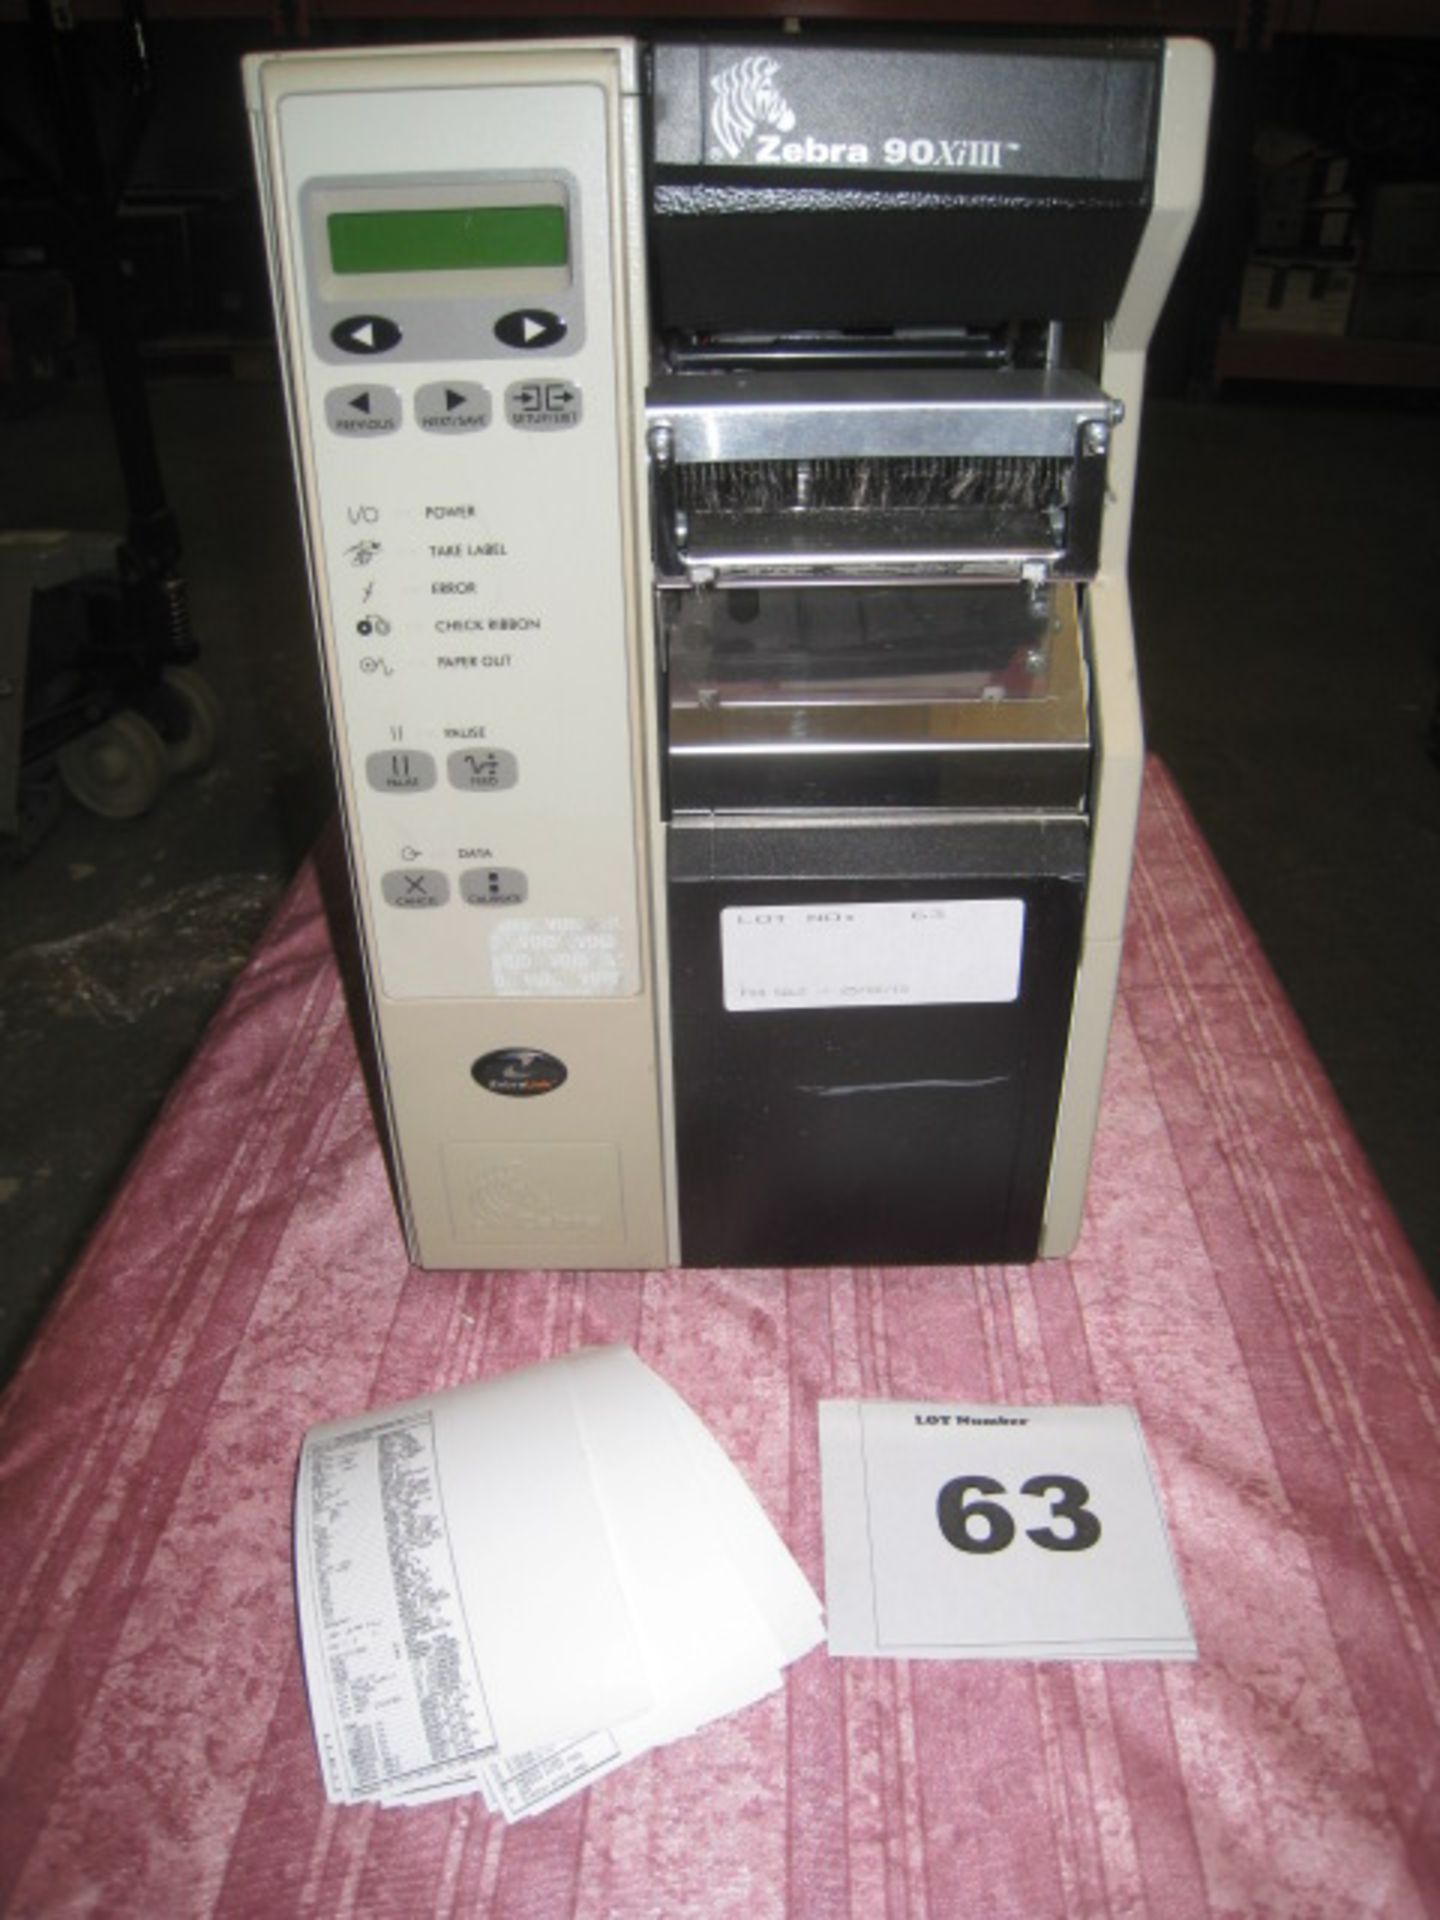 ZEBRA 90 XiIII  Label printer with test print